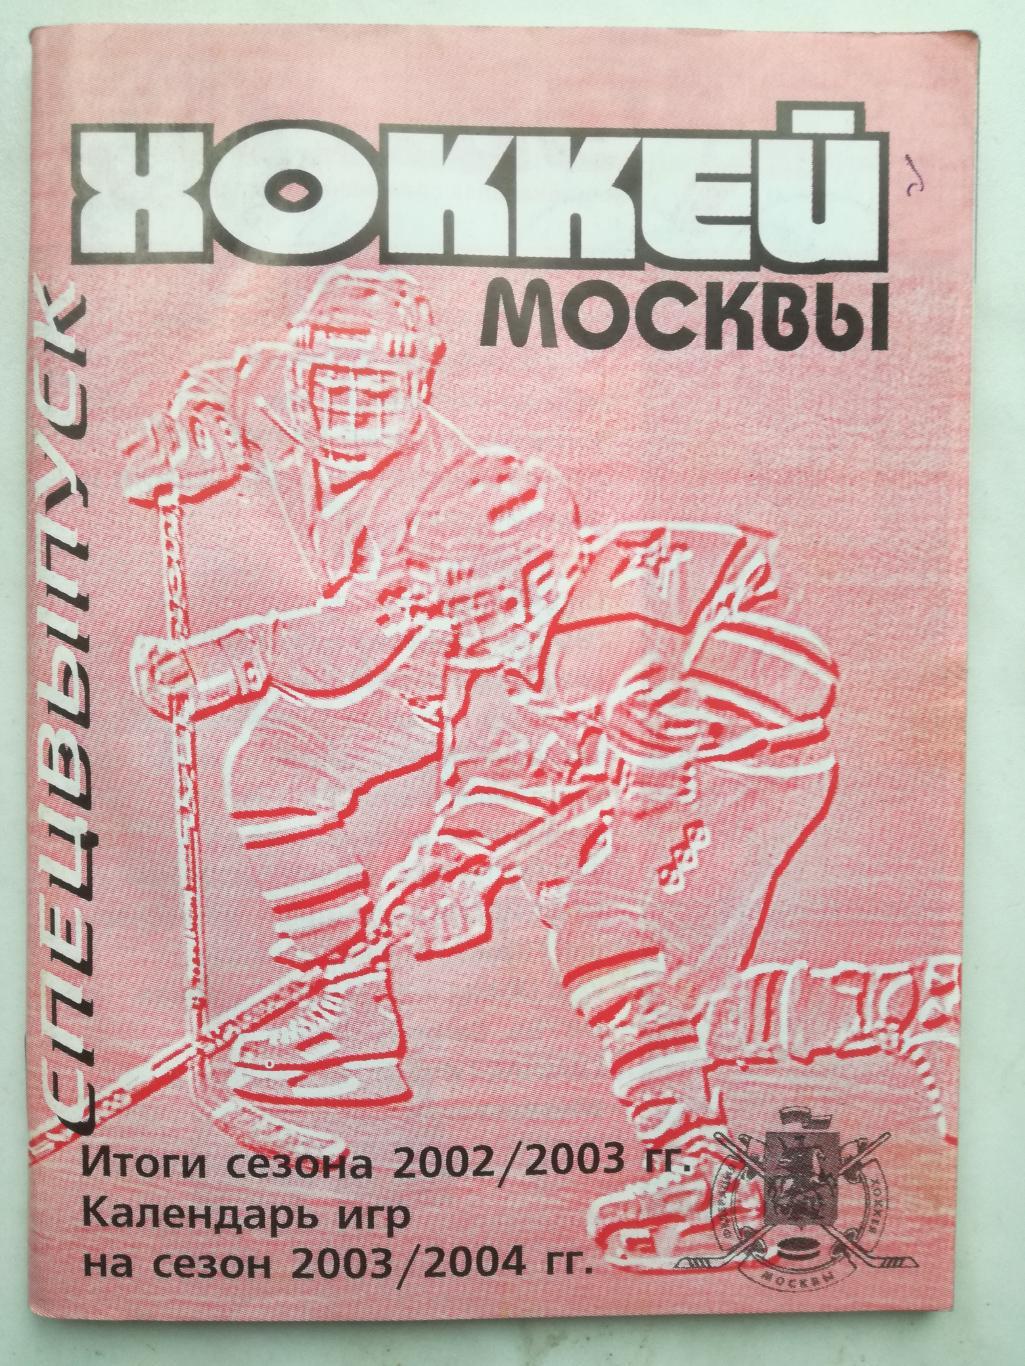 Хоккей Москвы 1999 2000 2001 2002 2003. Три выпуска